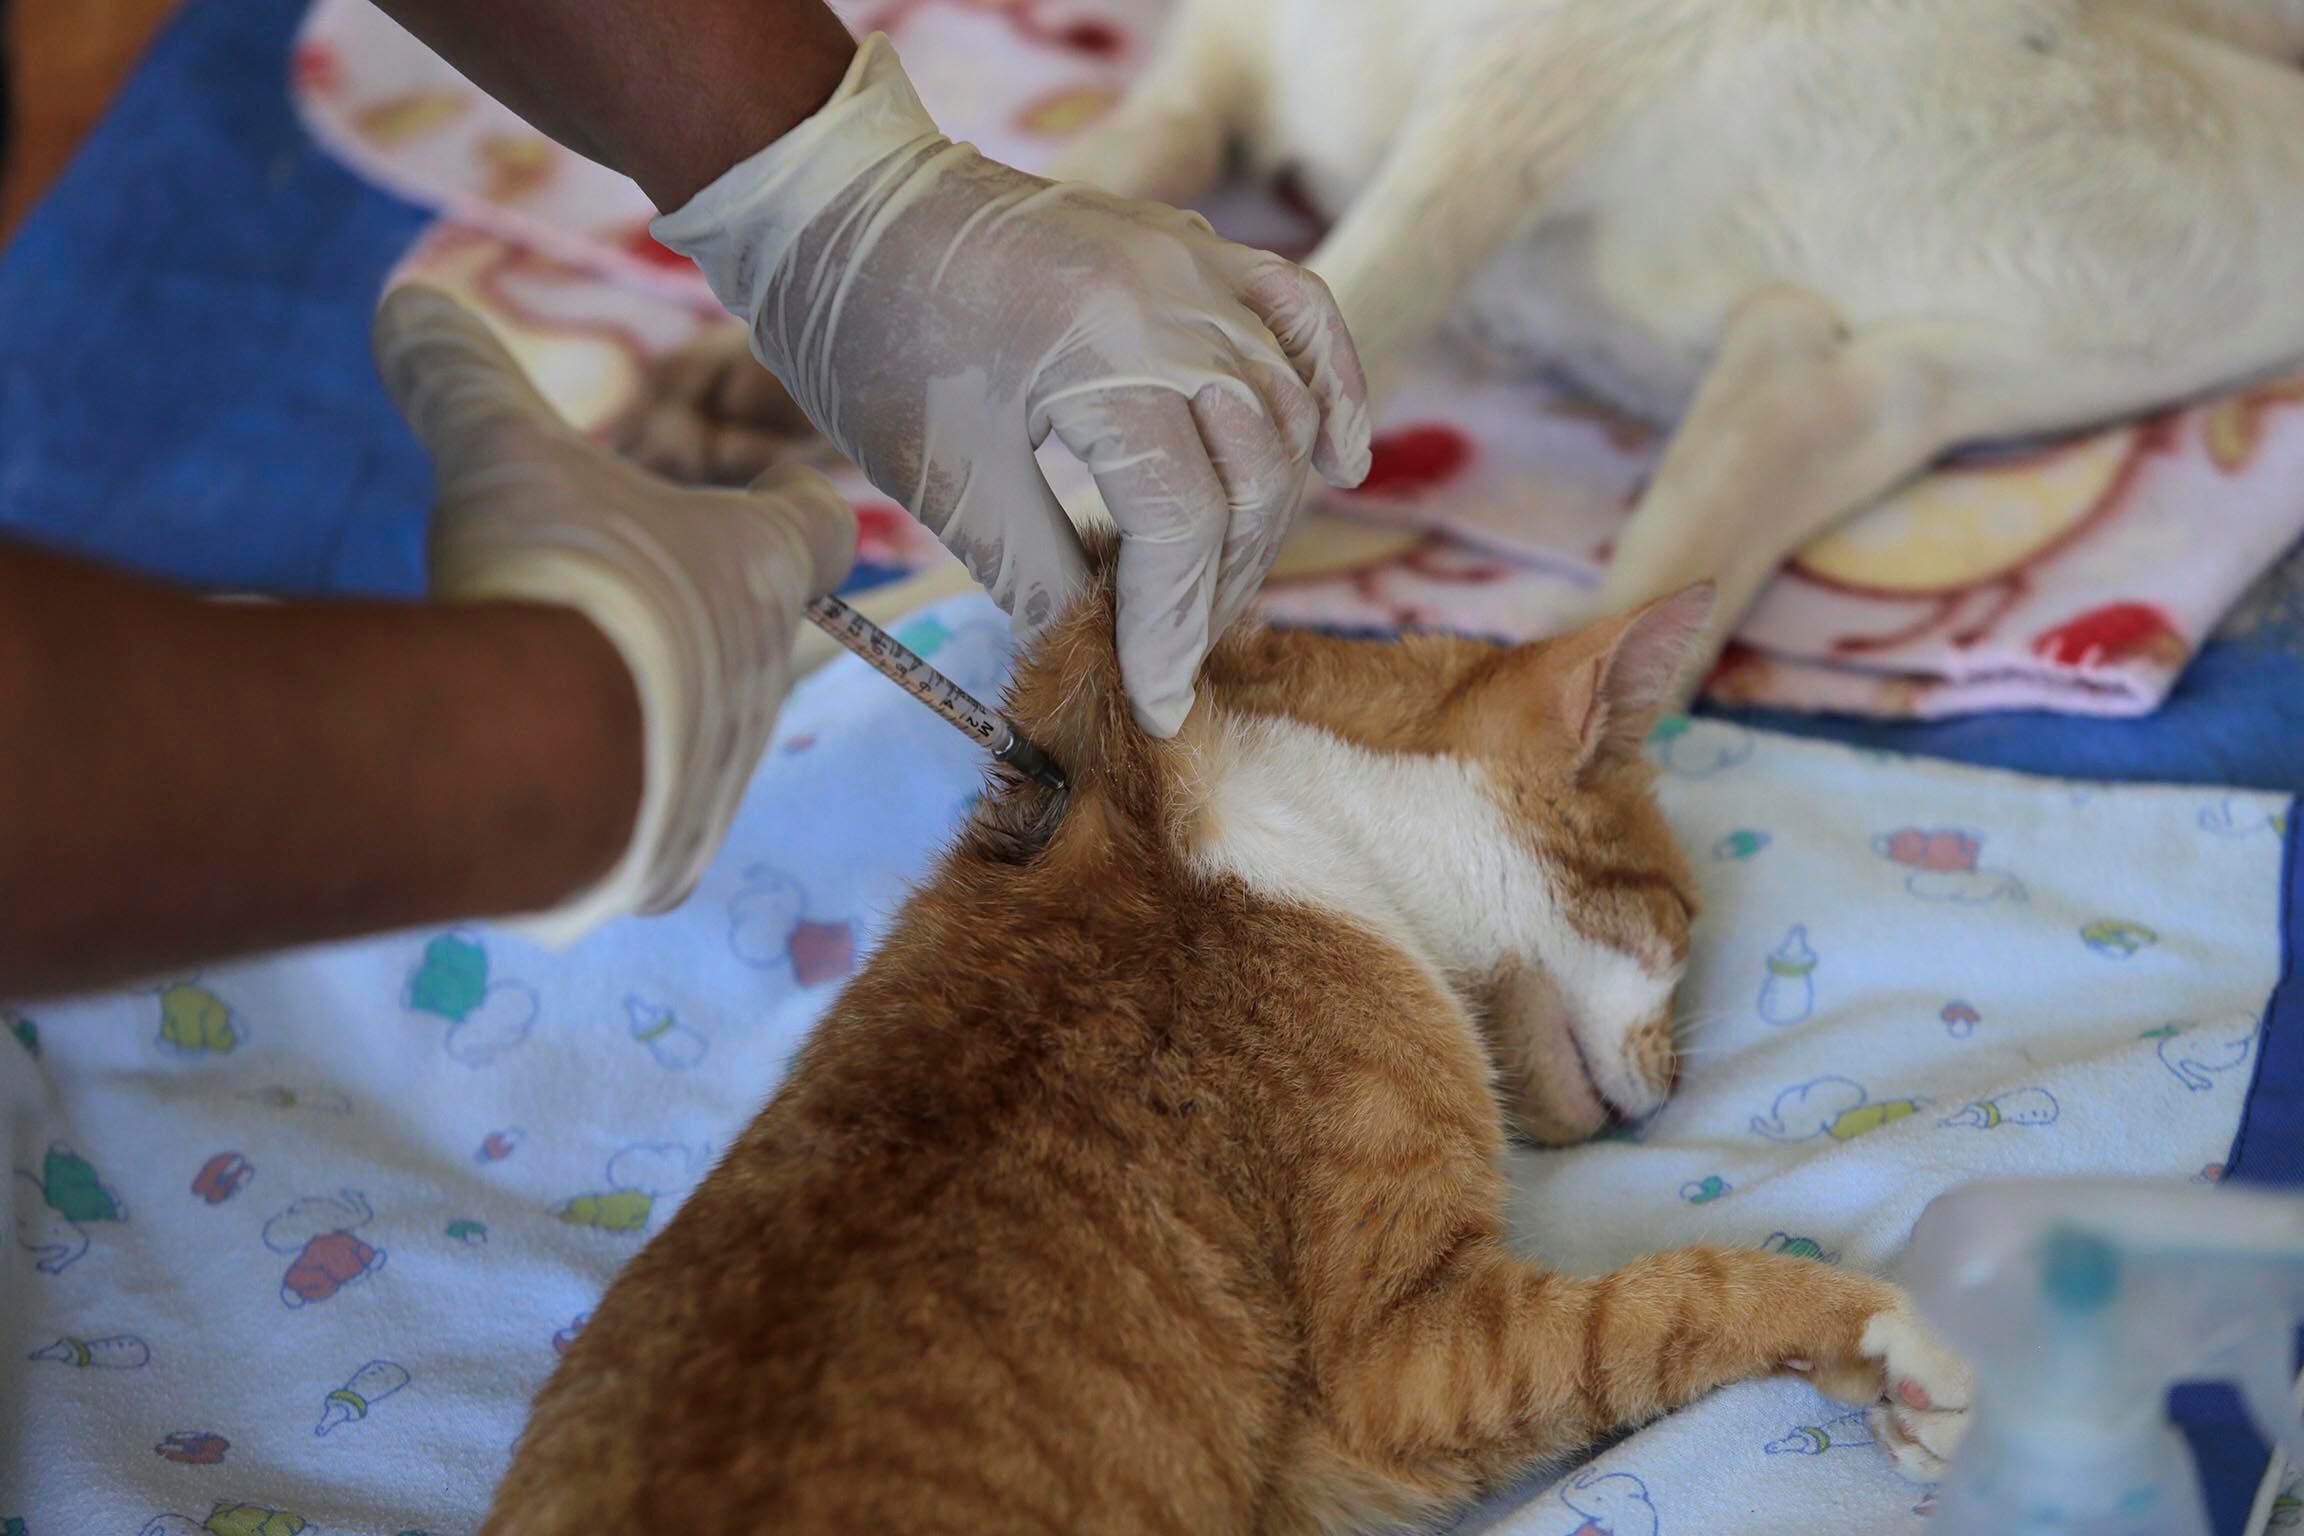 Los animales domésticos, como los perros y gatos, necesitan tanto de las vacunas como los seres humanos. Movimiento antivacunas en animales puede tener repercusiones graves.